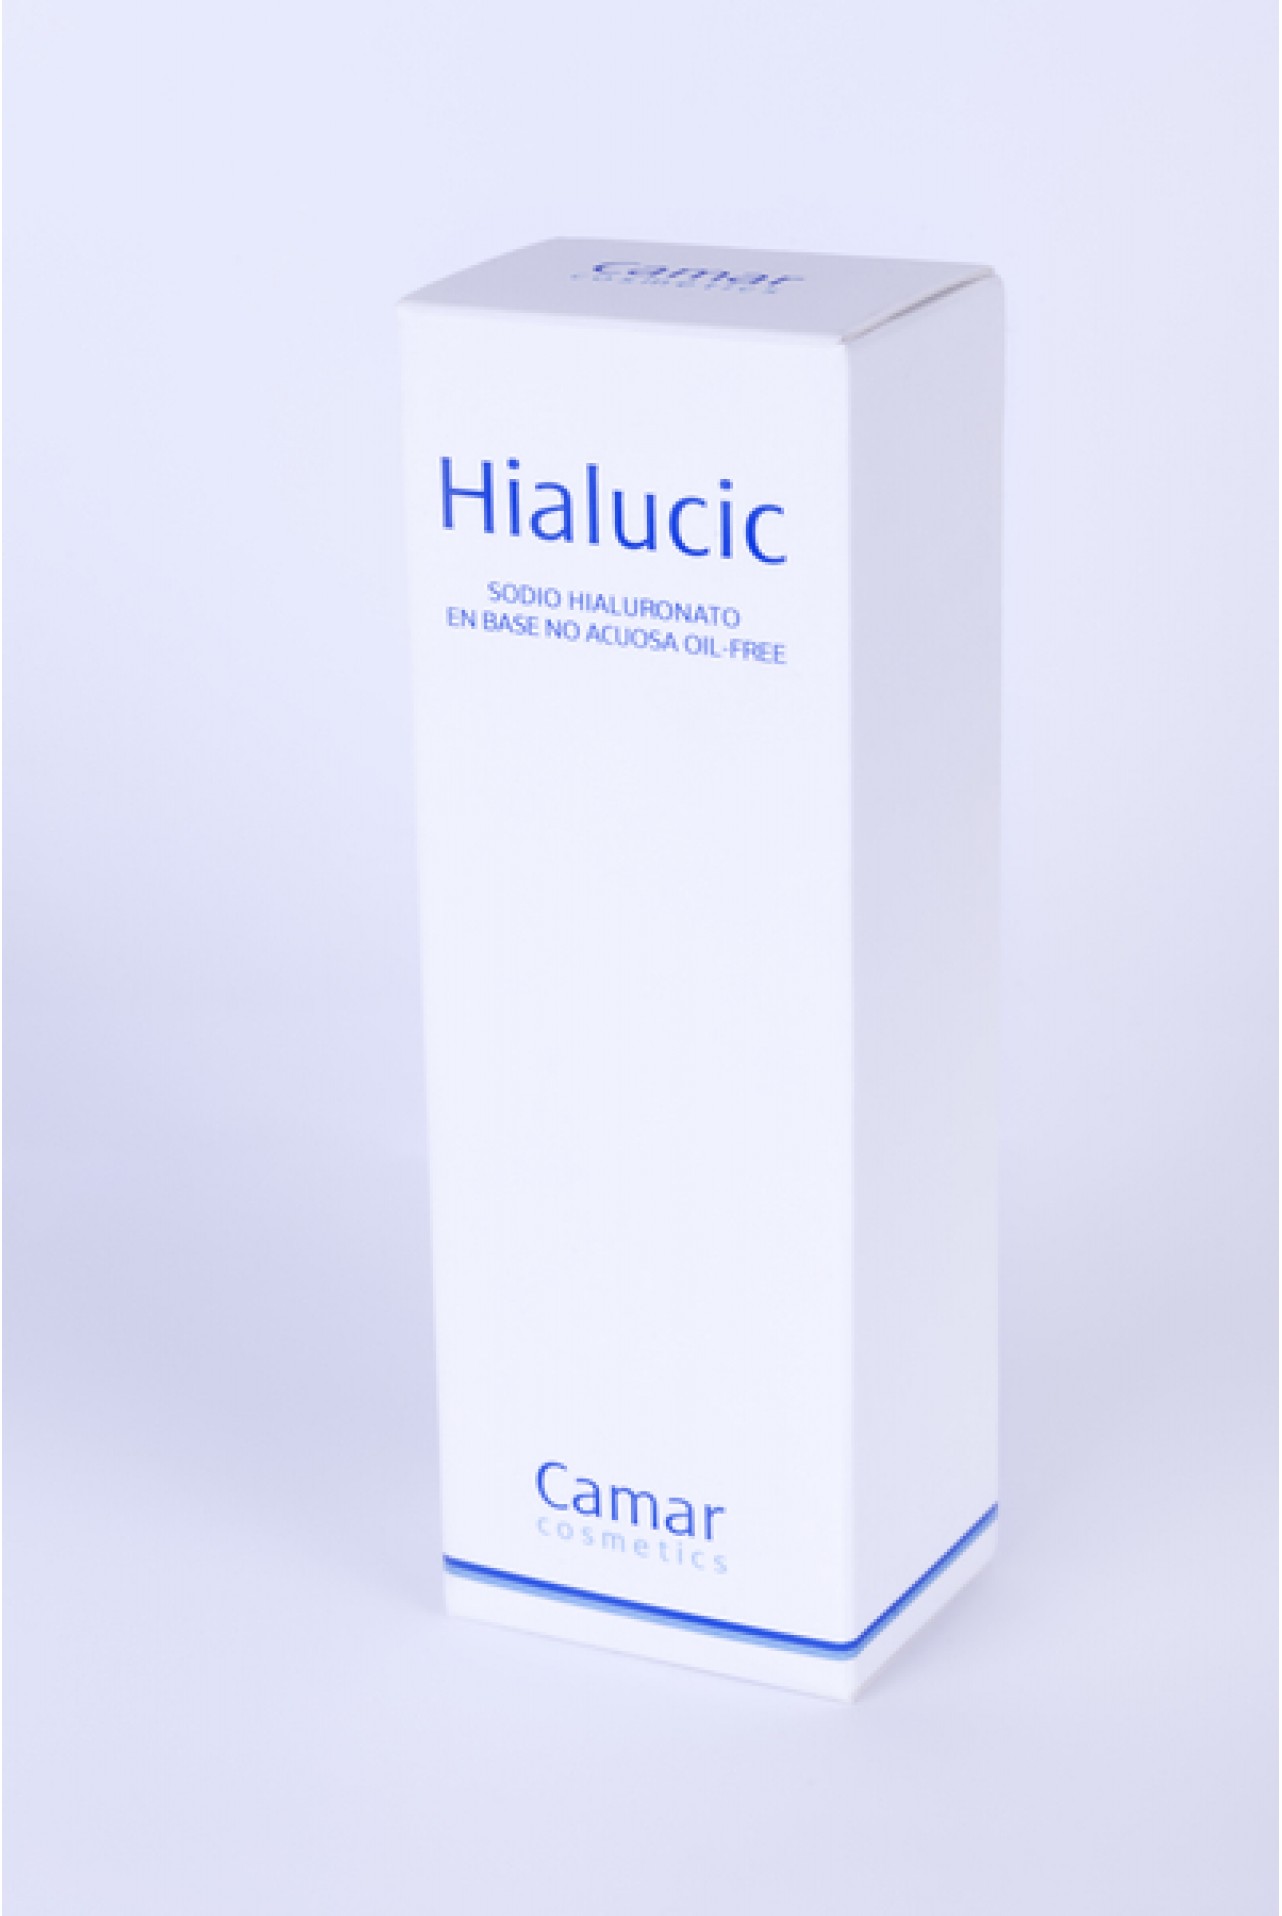 Contrapartida Habitual Saltar Hialucic 50ml | Crema de Ácido Hialurónico Puro